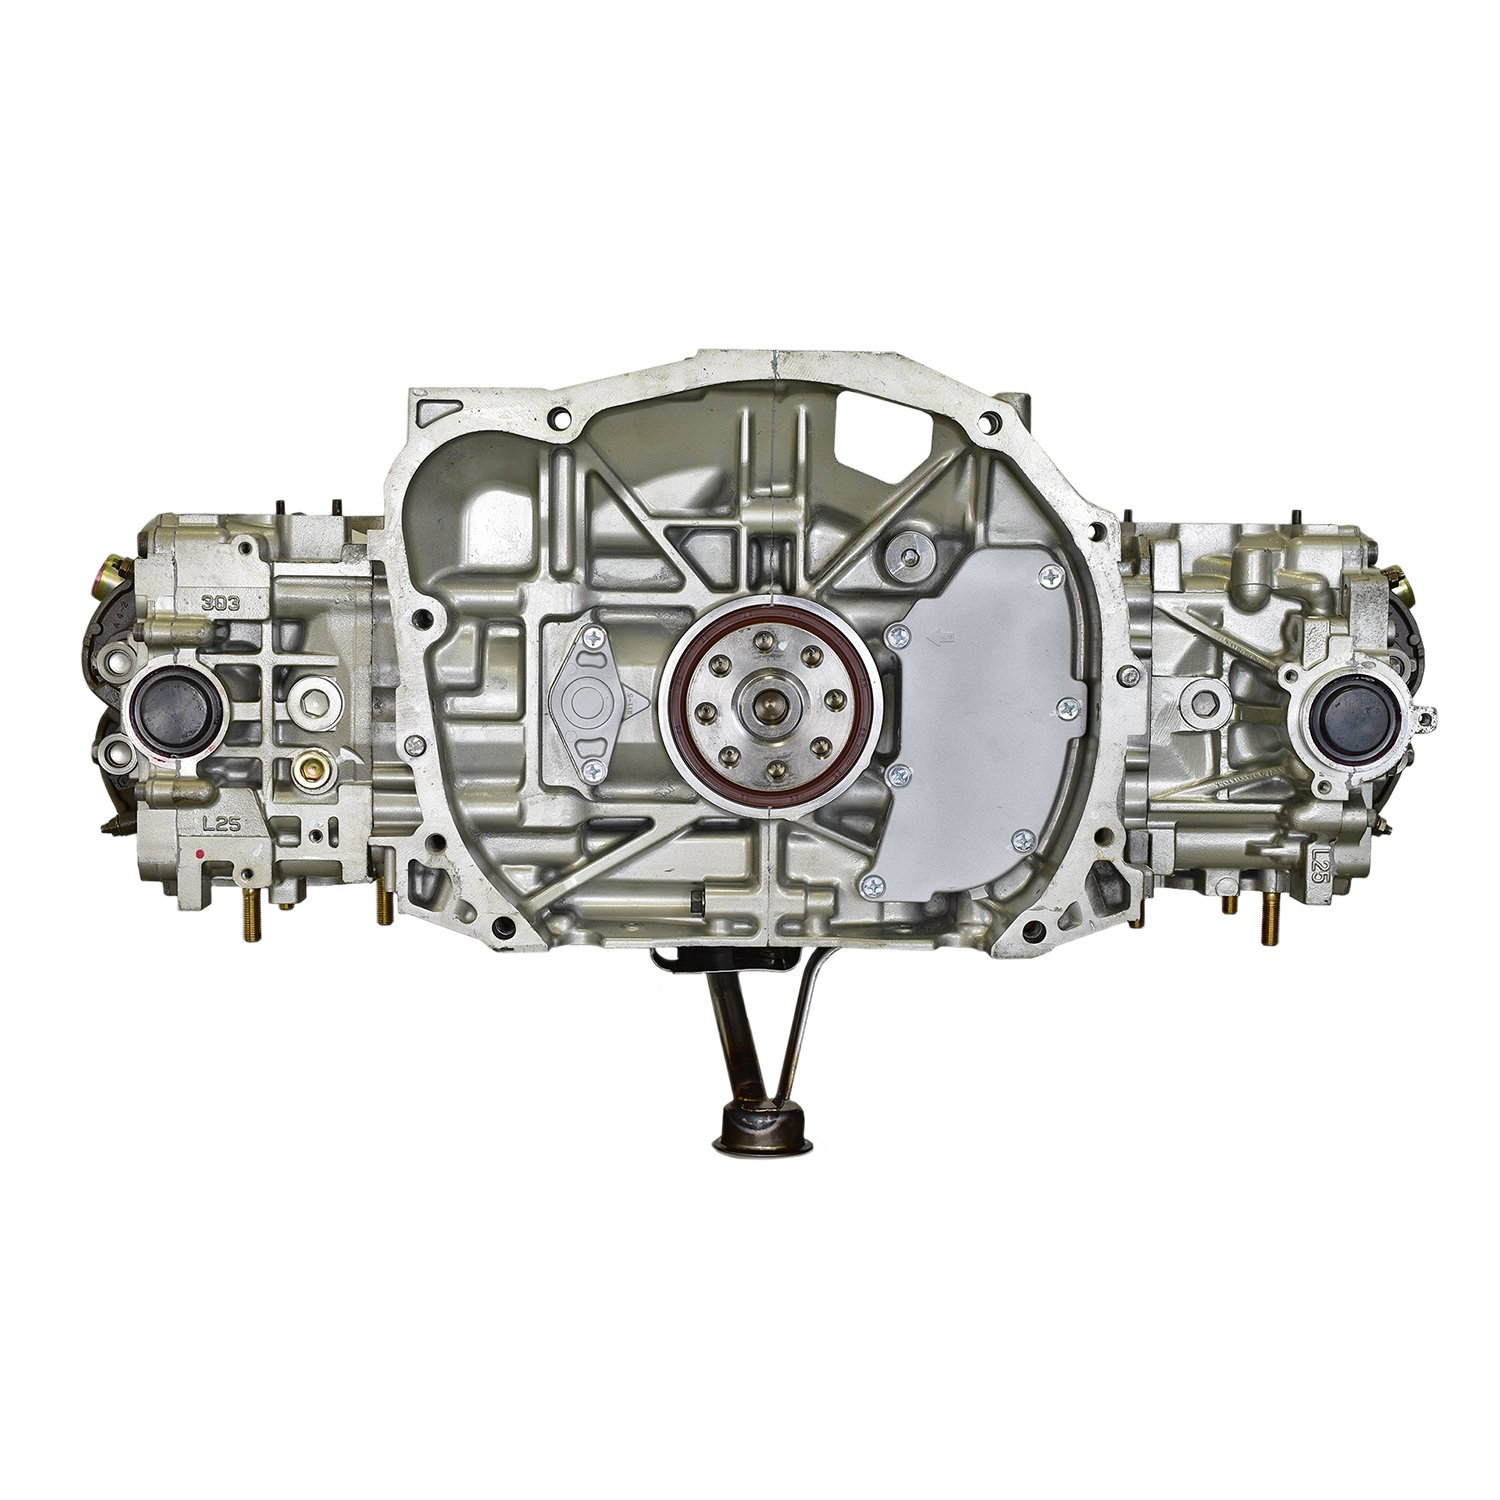 2005 NA 2.5 SUBARU ENGINE